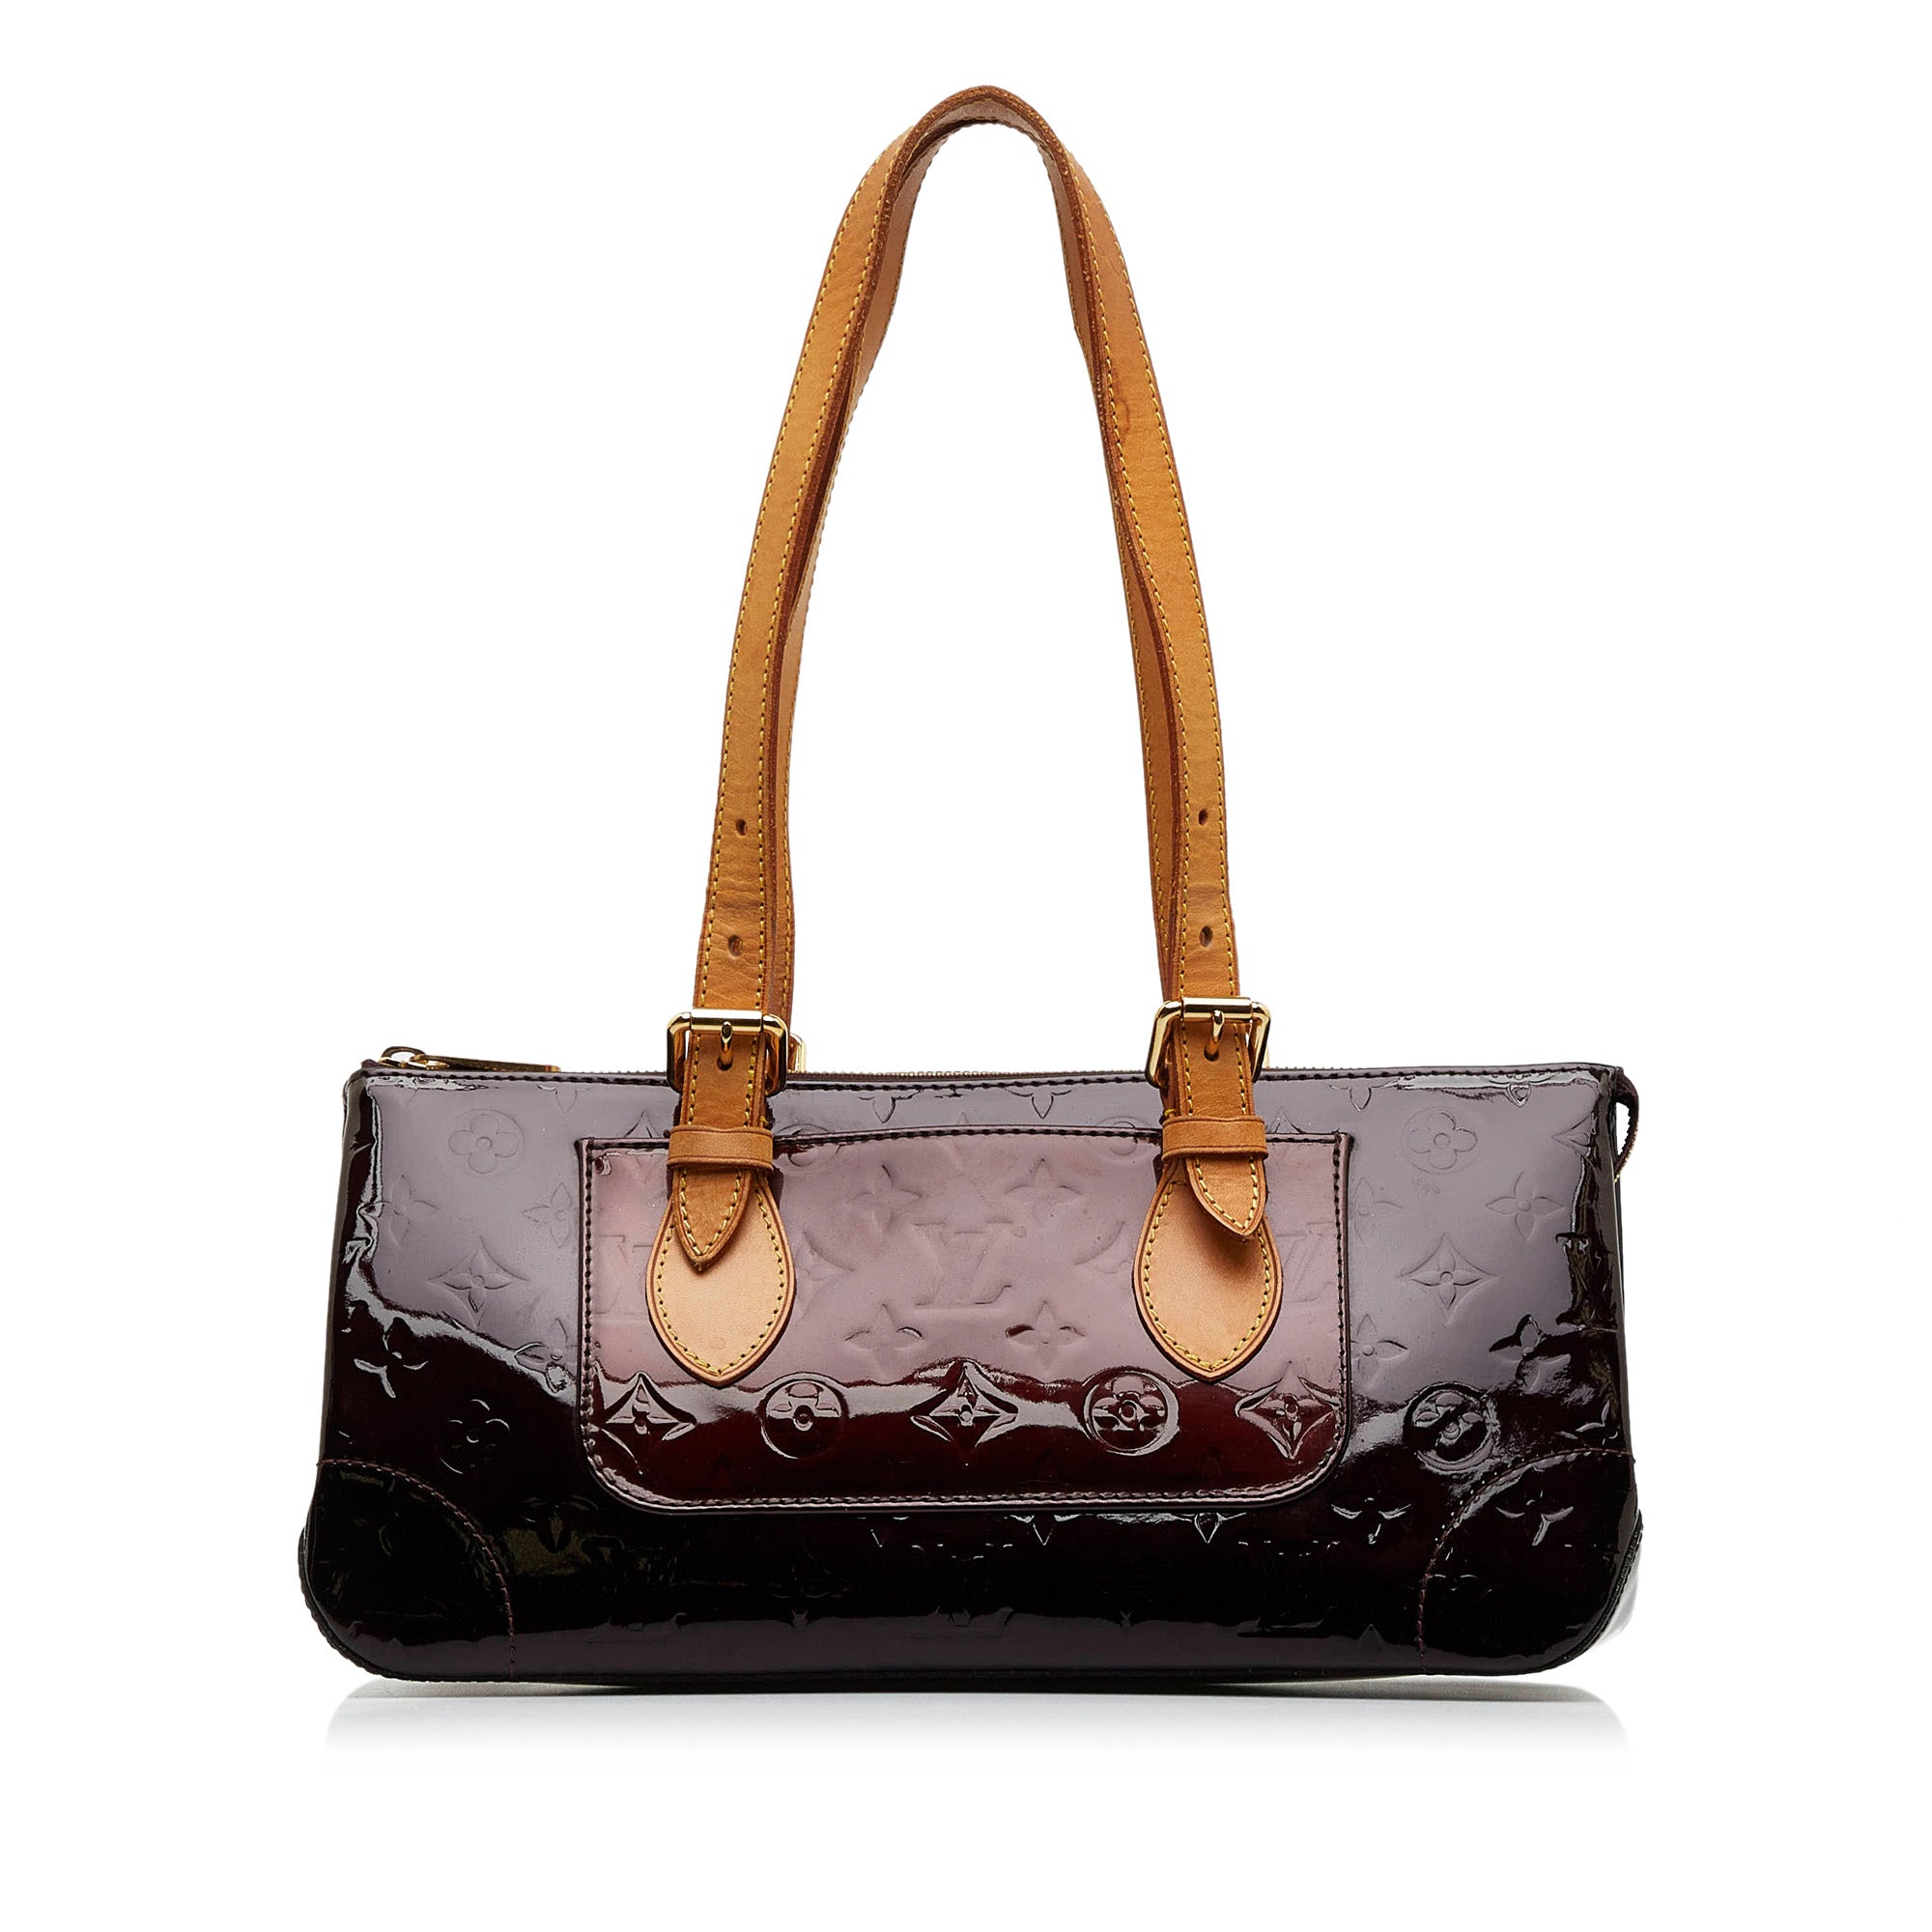 Louis Vuitton Exterior Bags & Handbags for Women